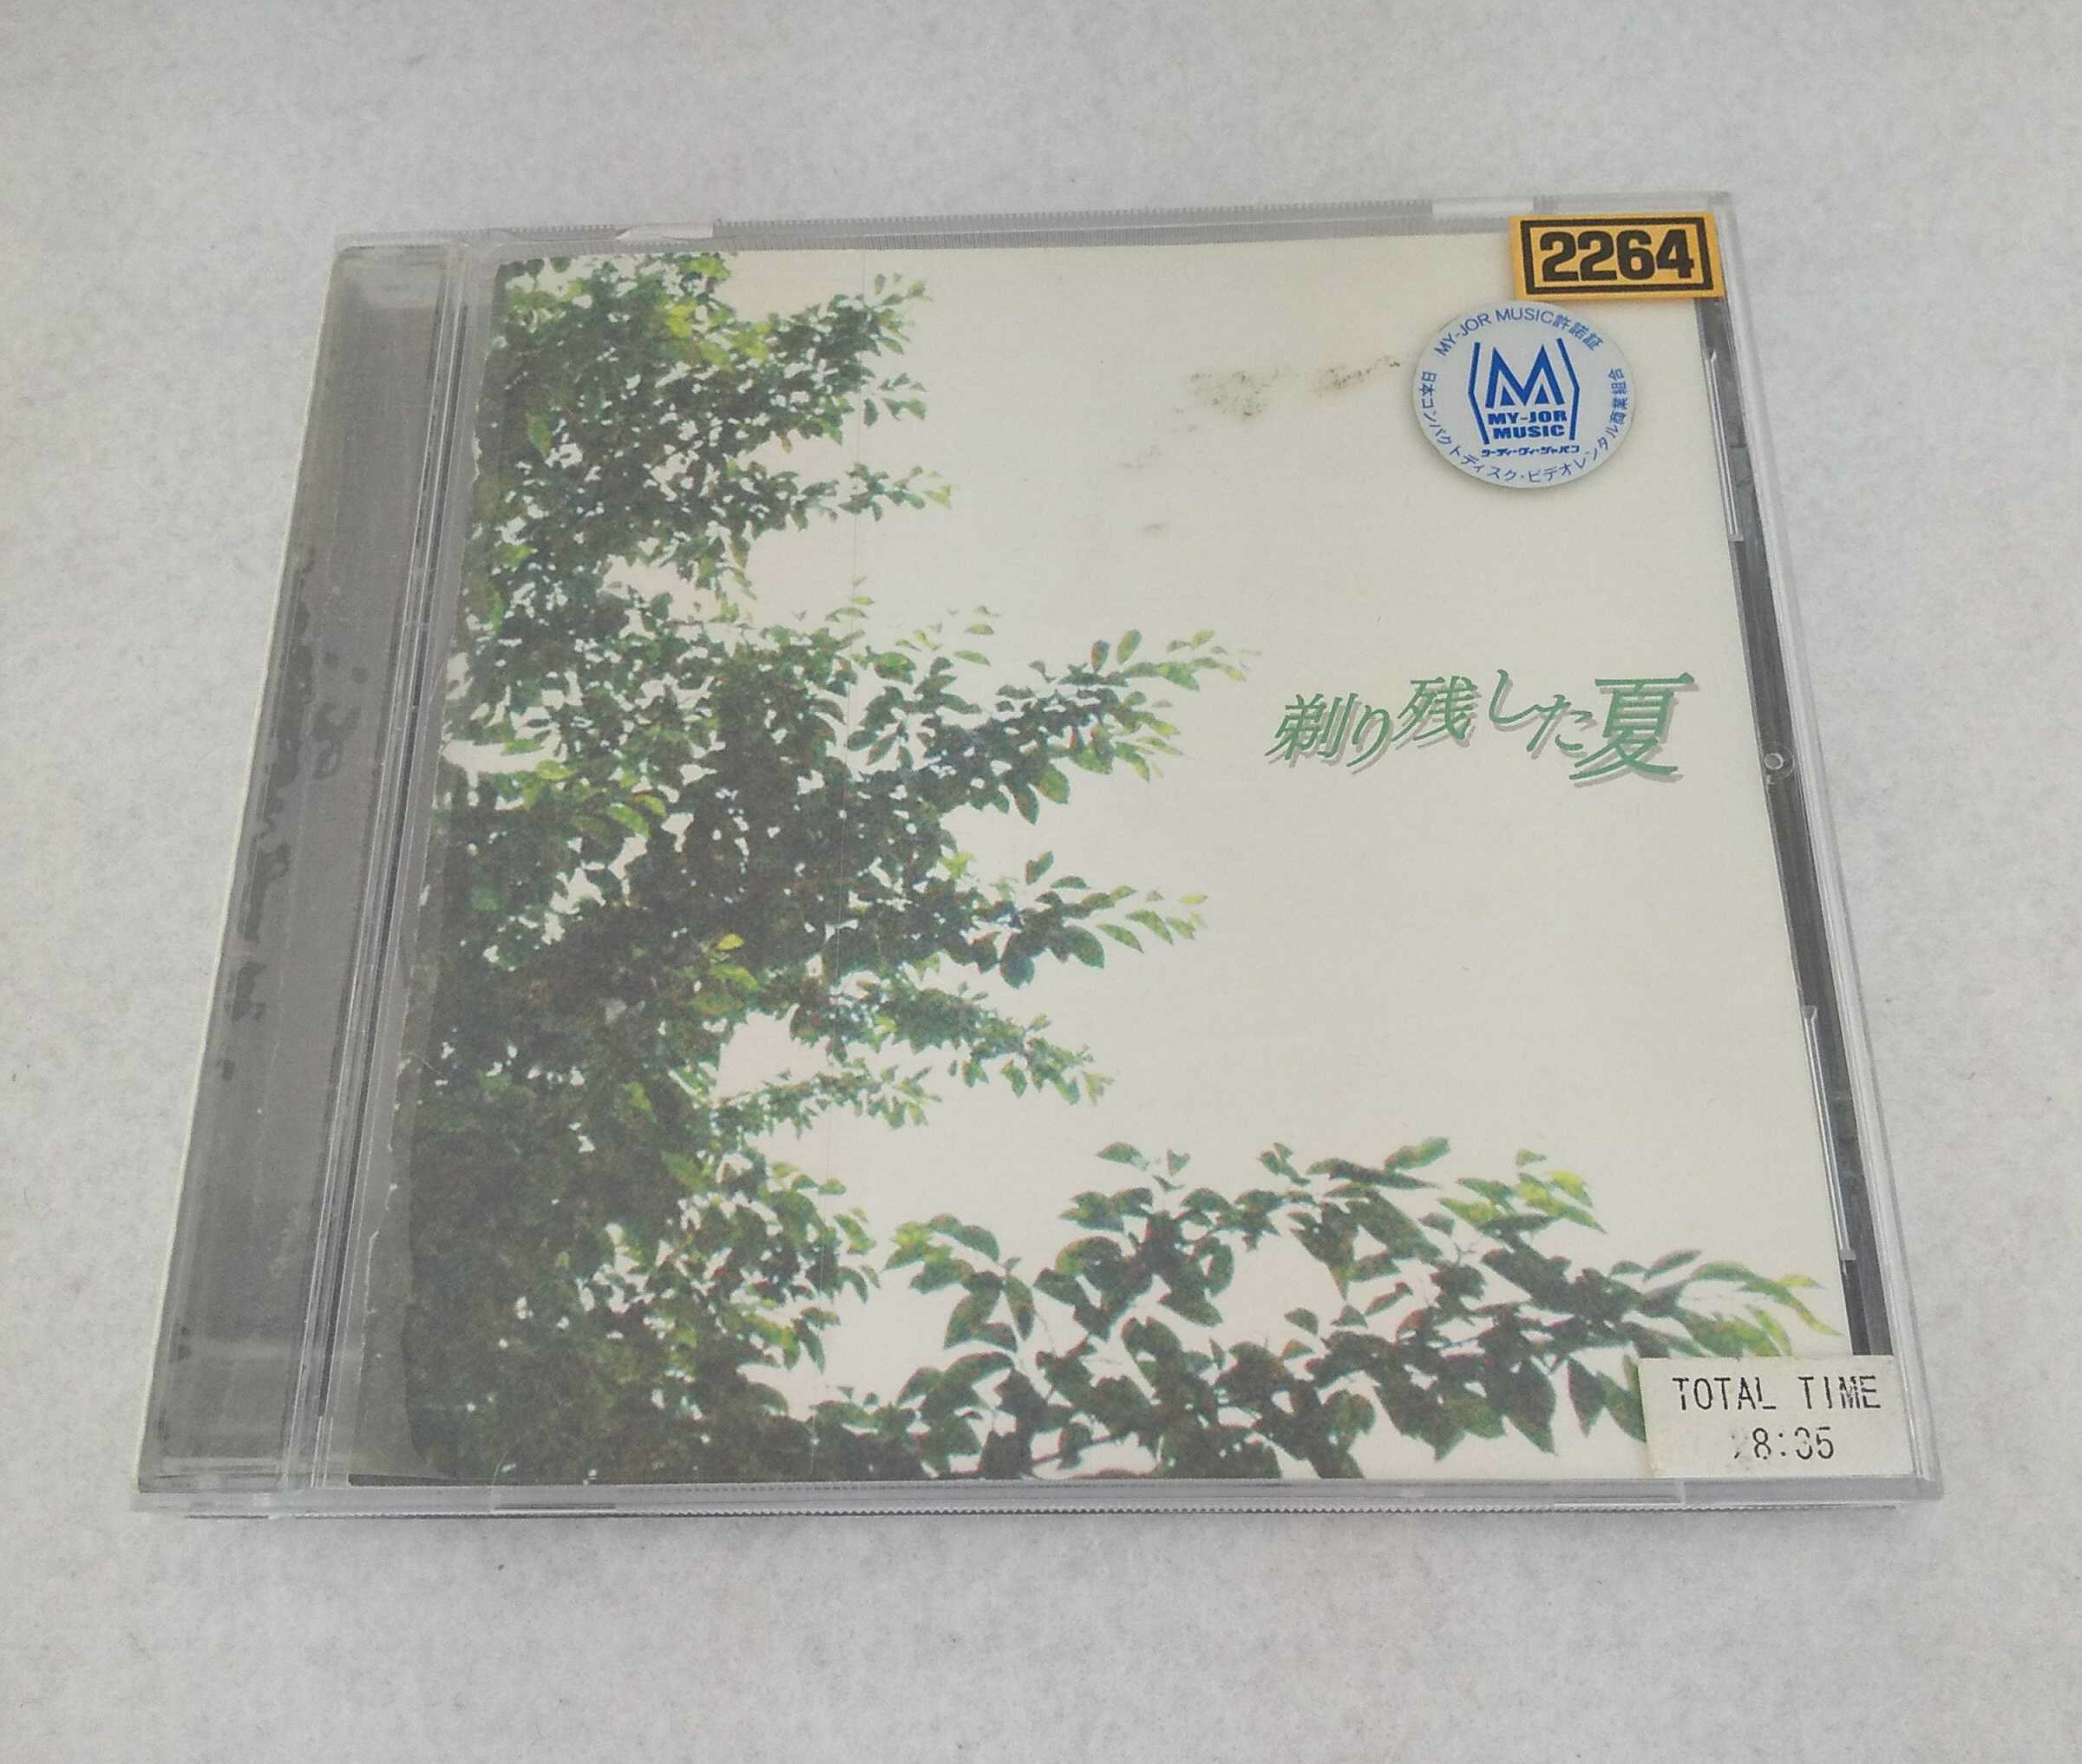 AC11587 【中古】 【CD】 剃り残した夏 オリジナルサウンドトラック 音楽:ゴールデンボンバー